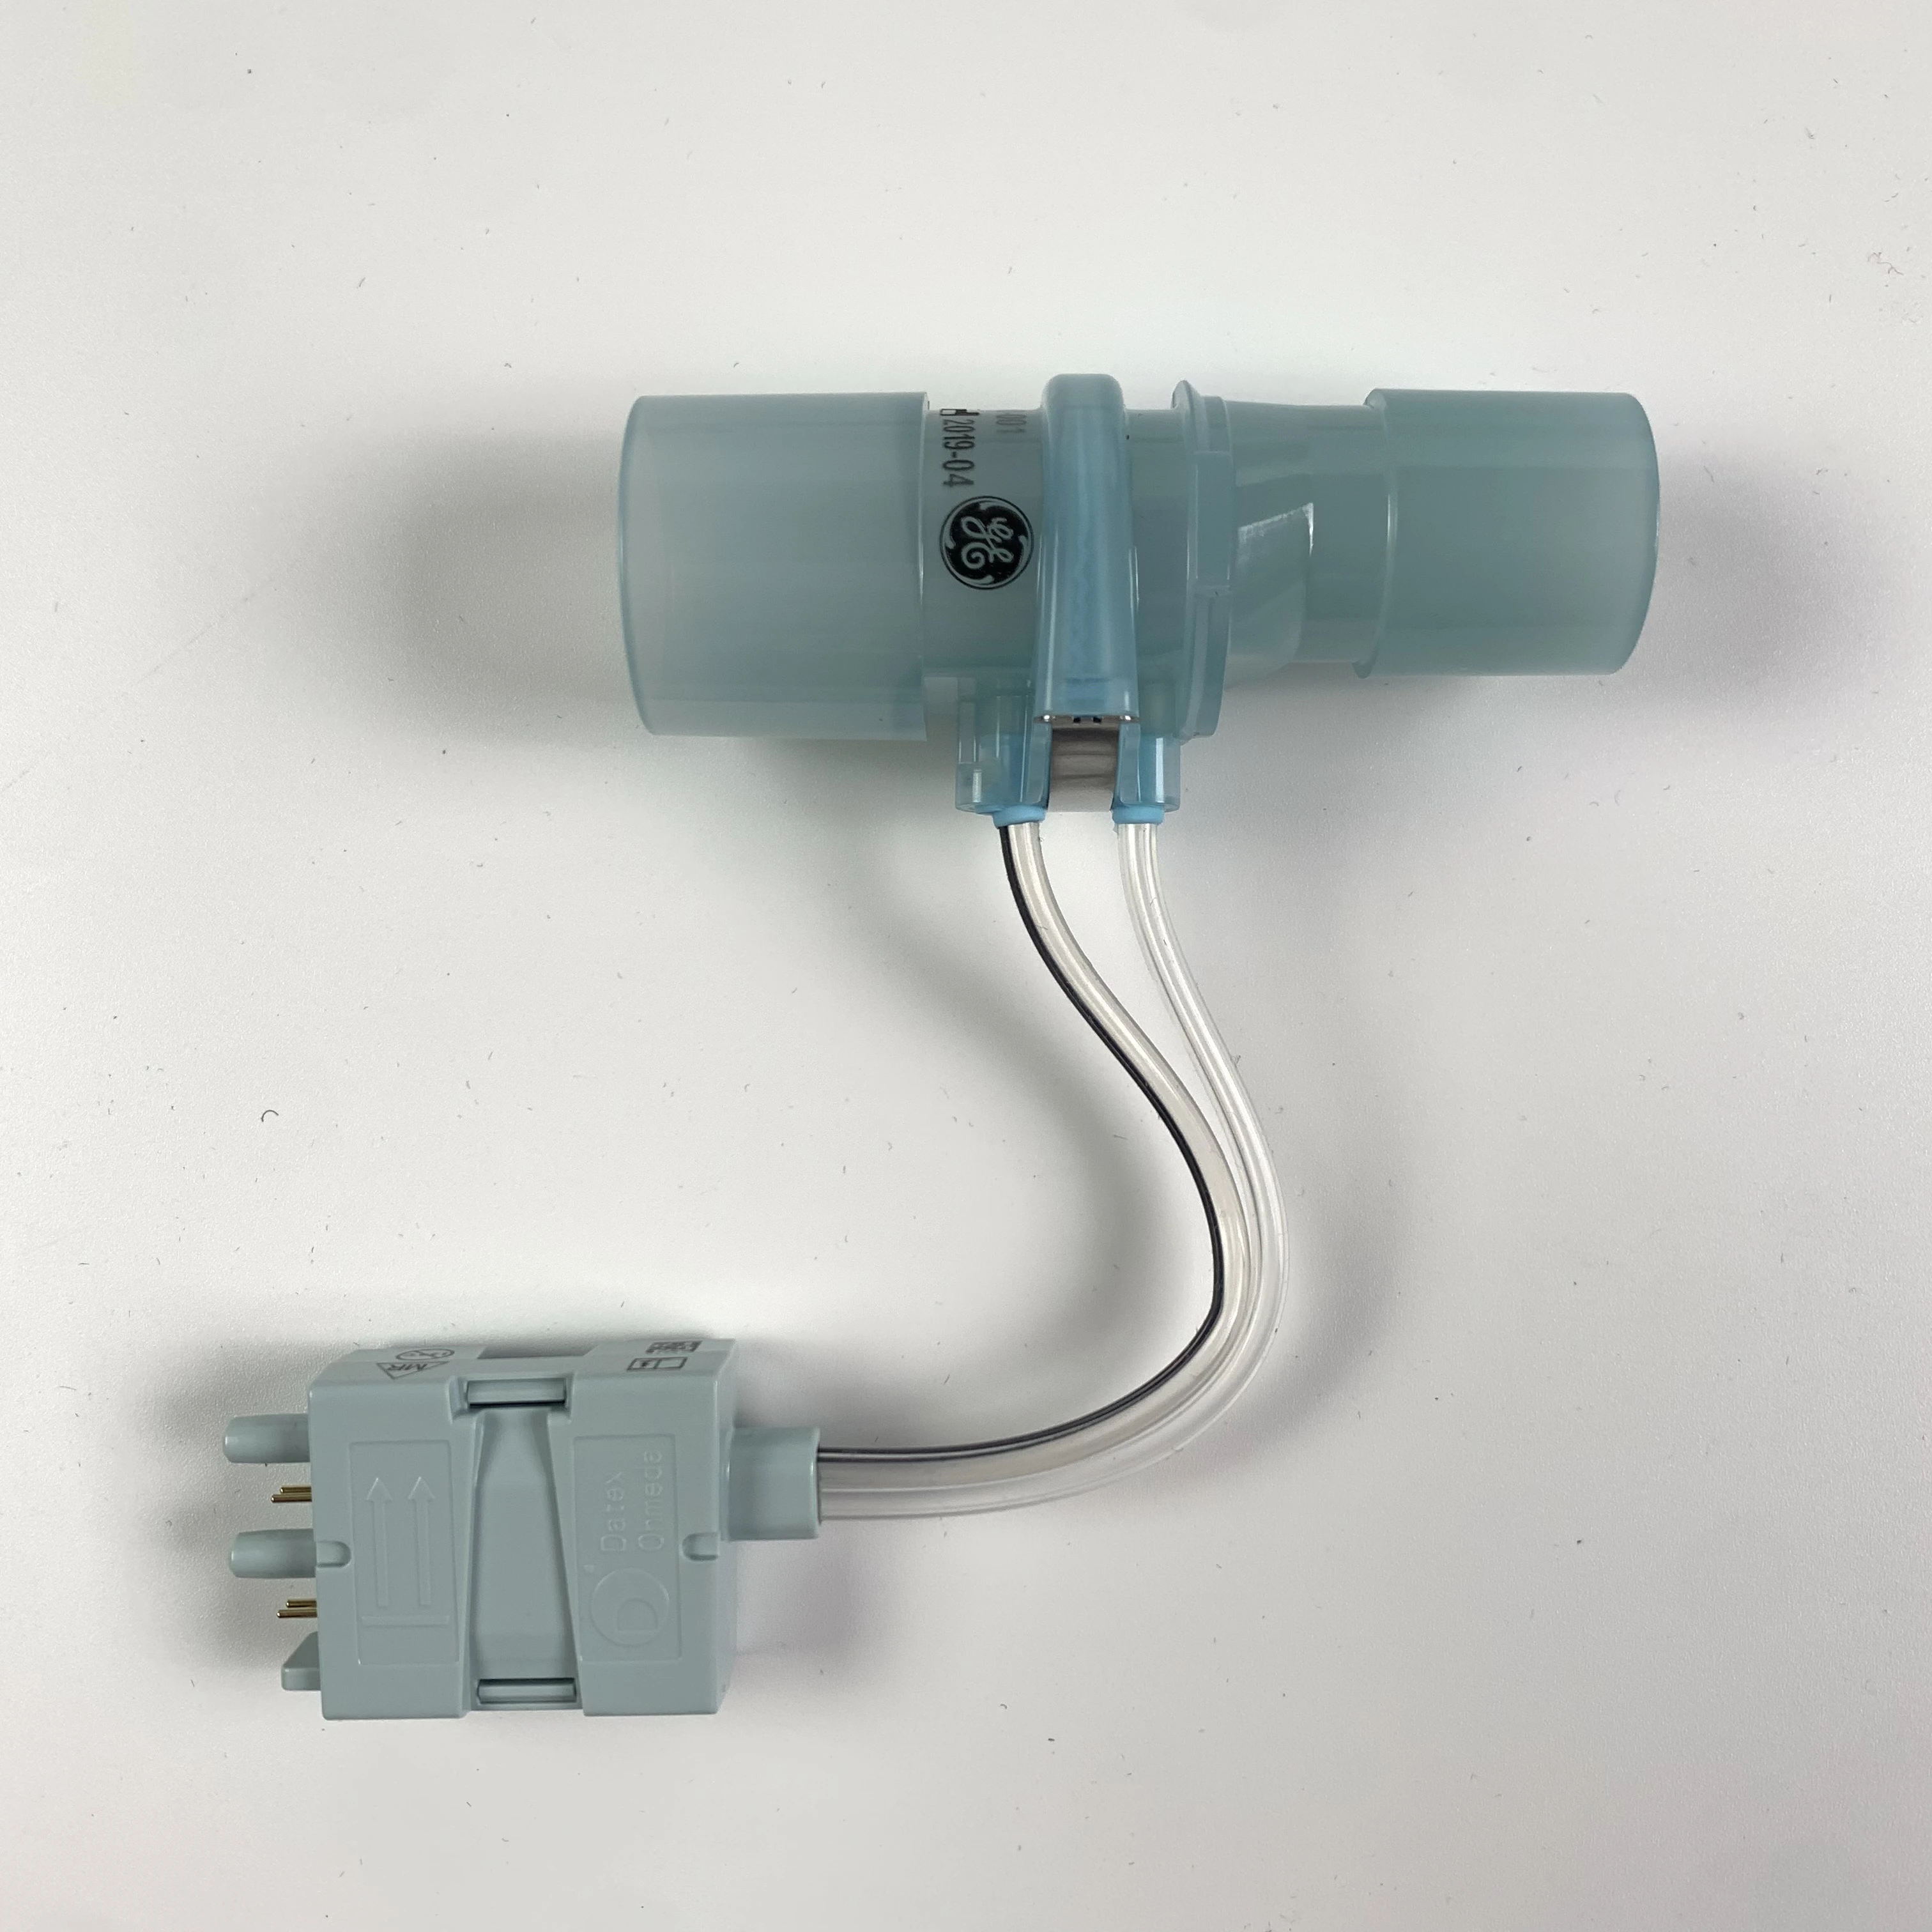 

PN: 2089610-001-S New Original flow sensor for GE Datex Ohmeda Anesthesia